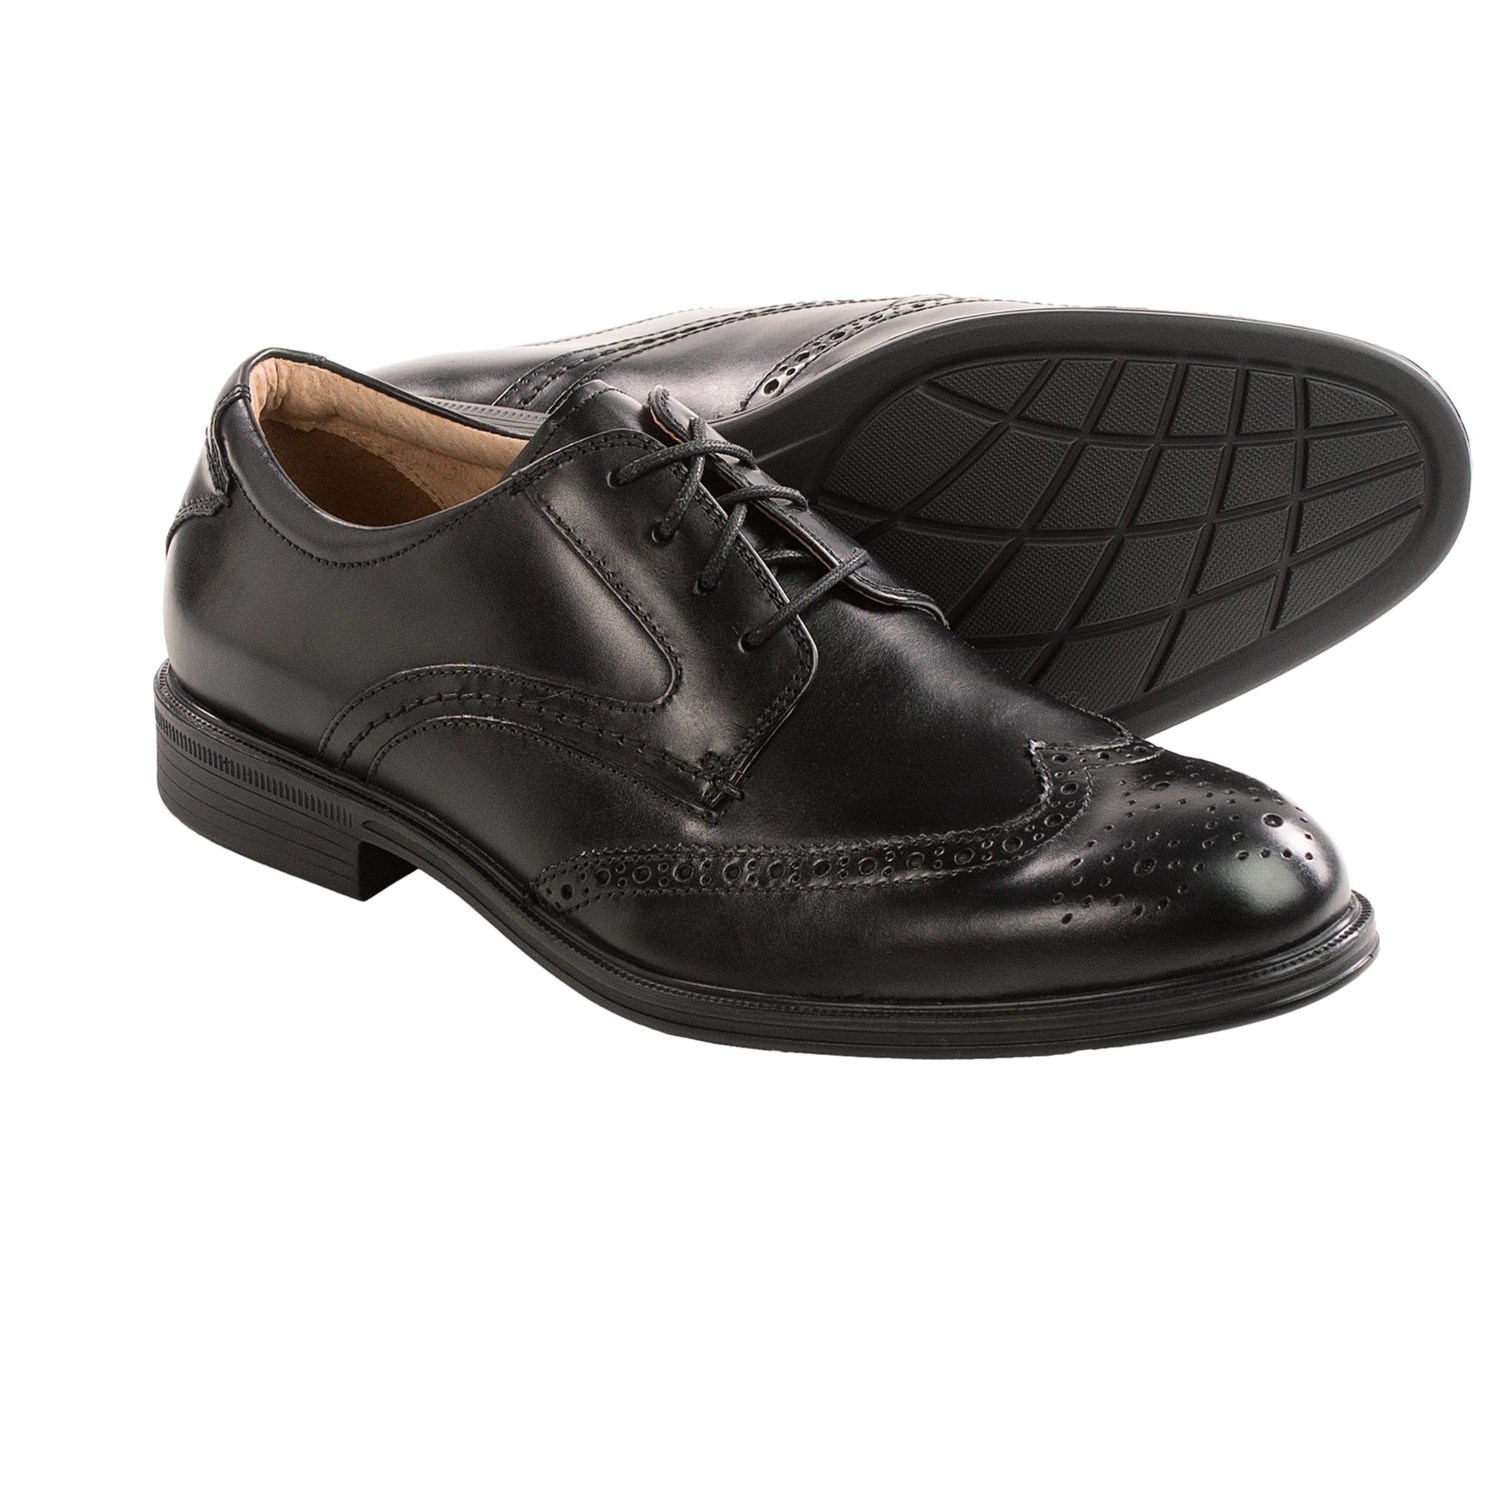 Florsheim Shoes For Men 43